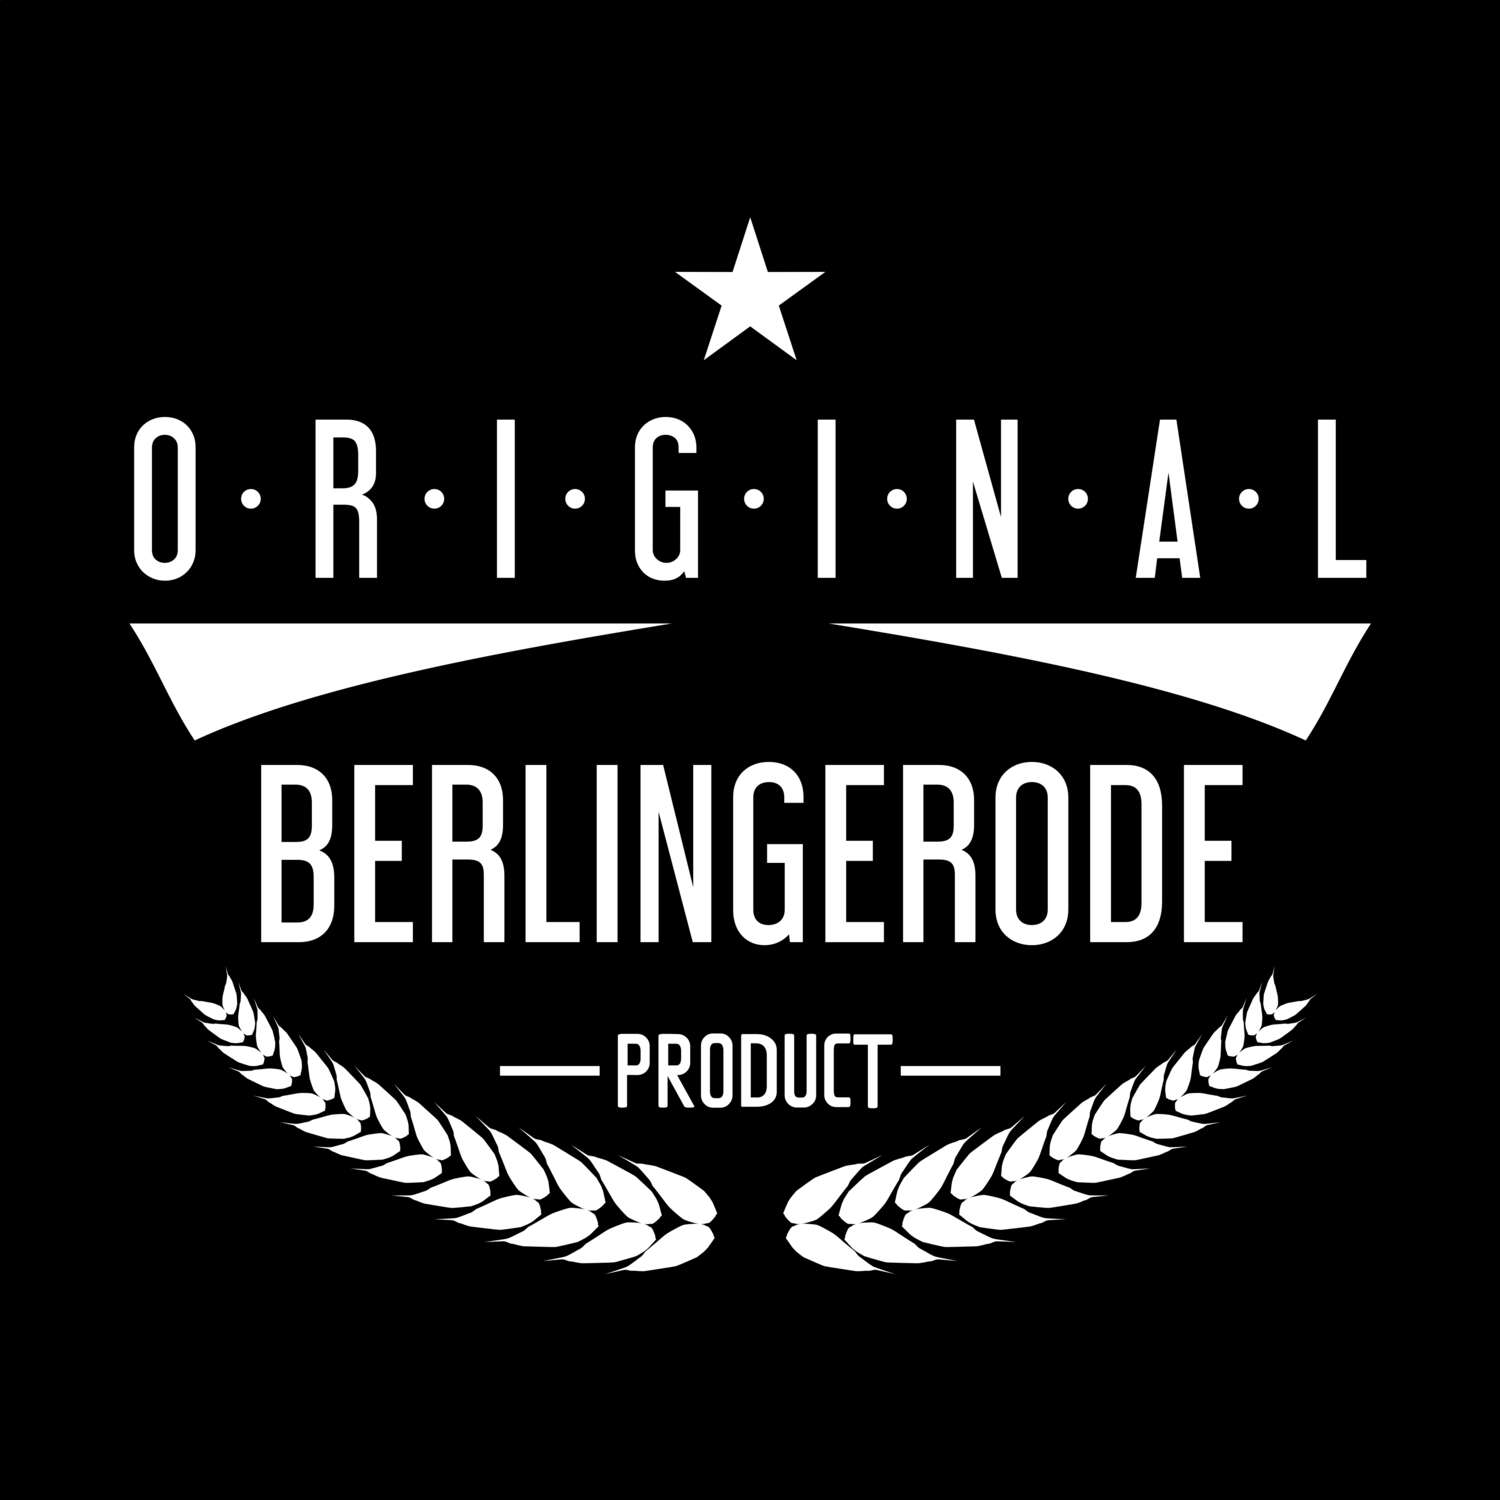 Berlingerode T-Shirt »Original Product«